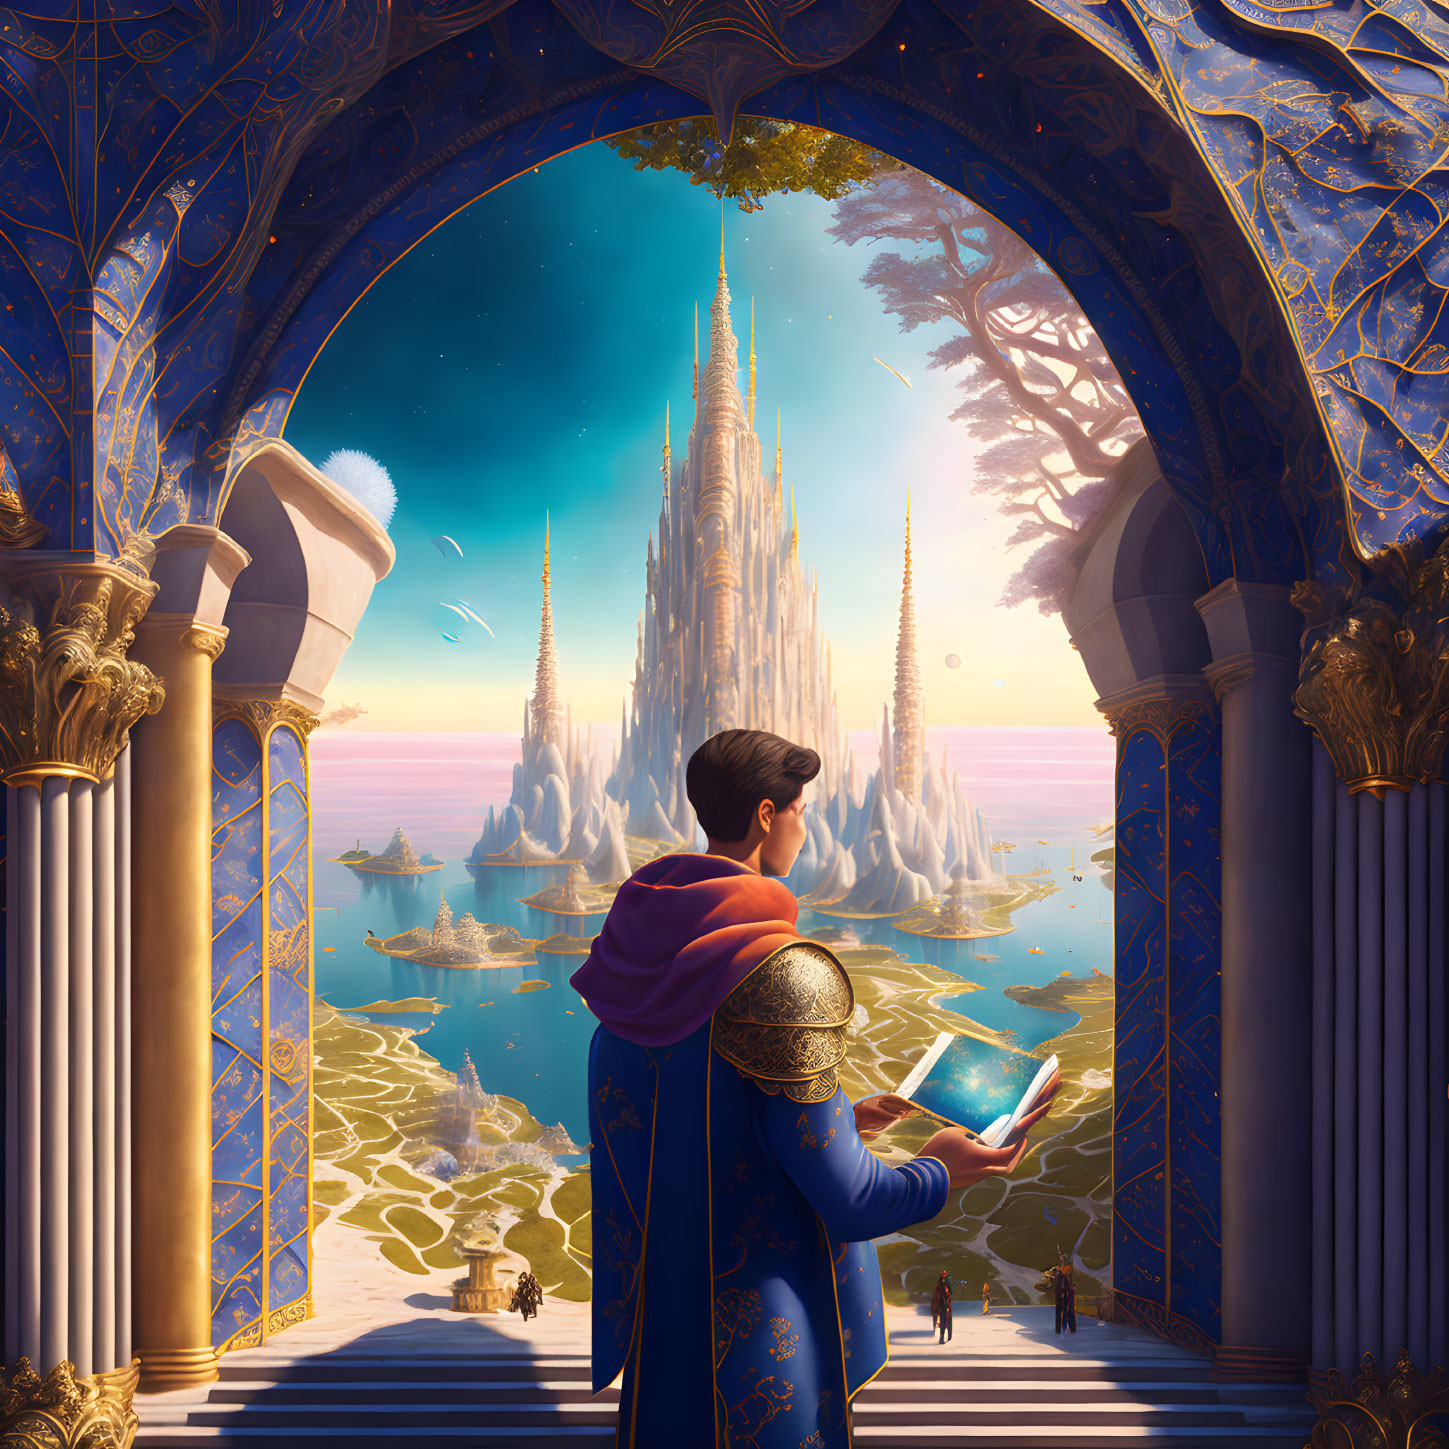 Regal man in ornate attire gazes at crystal castle in fantastical landscape